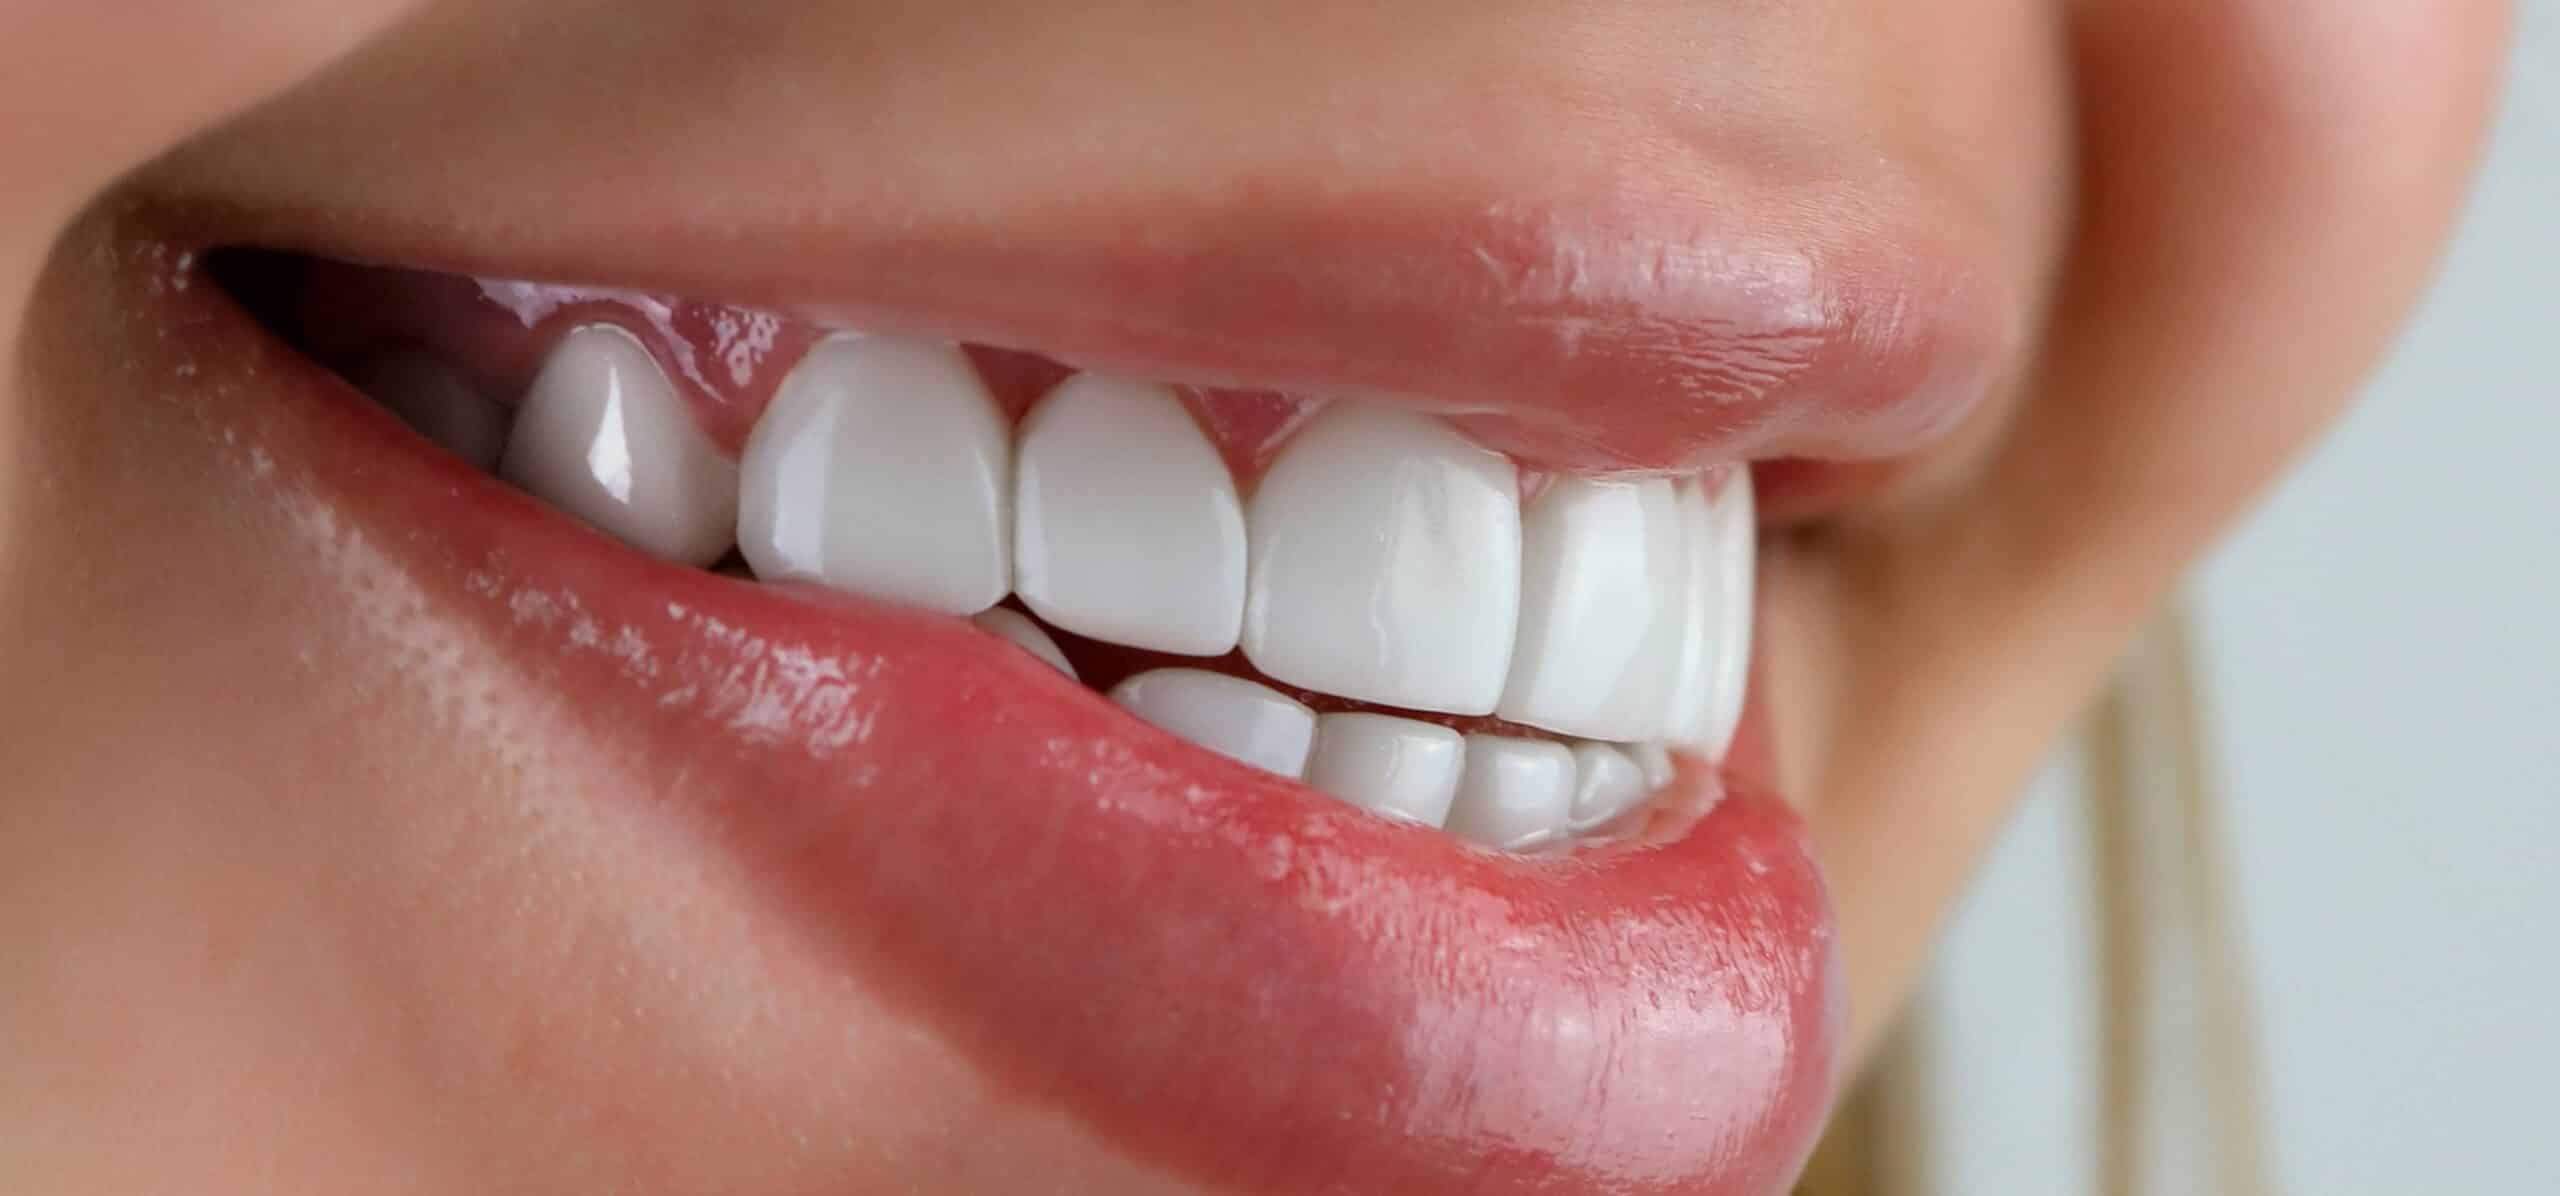 Les facettes dentaires nécessitent-elles un renouvellement ? Dr Temstet | Paris